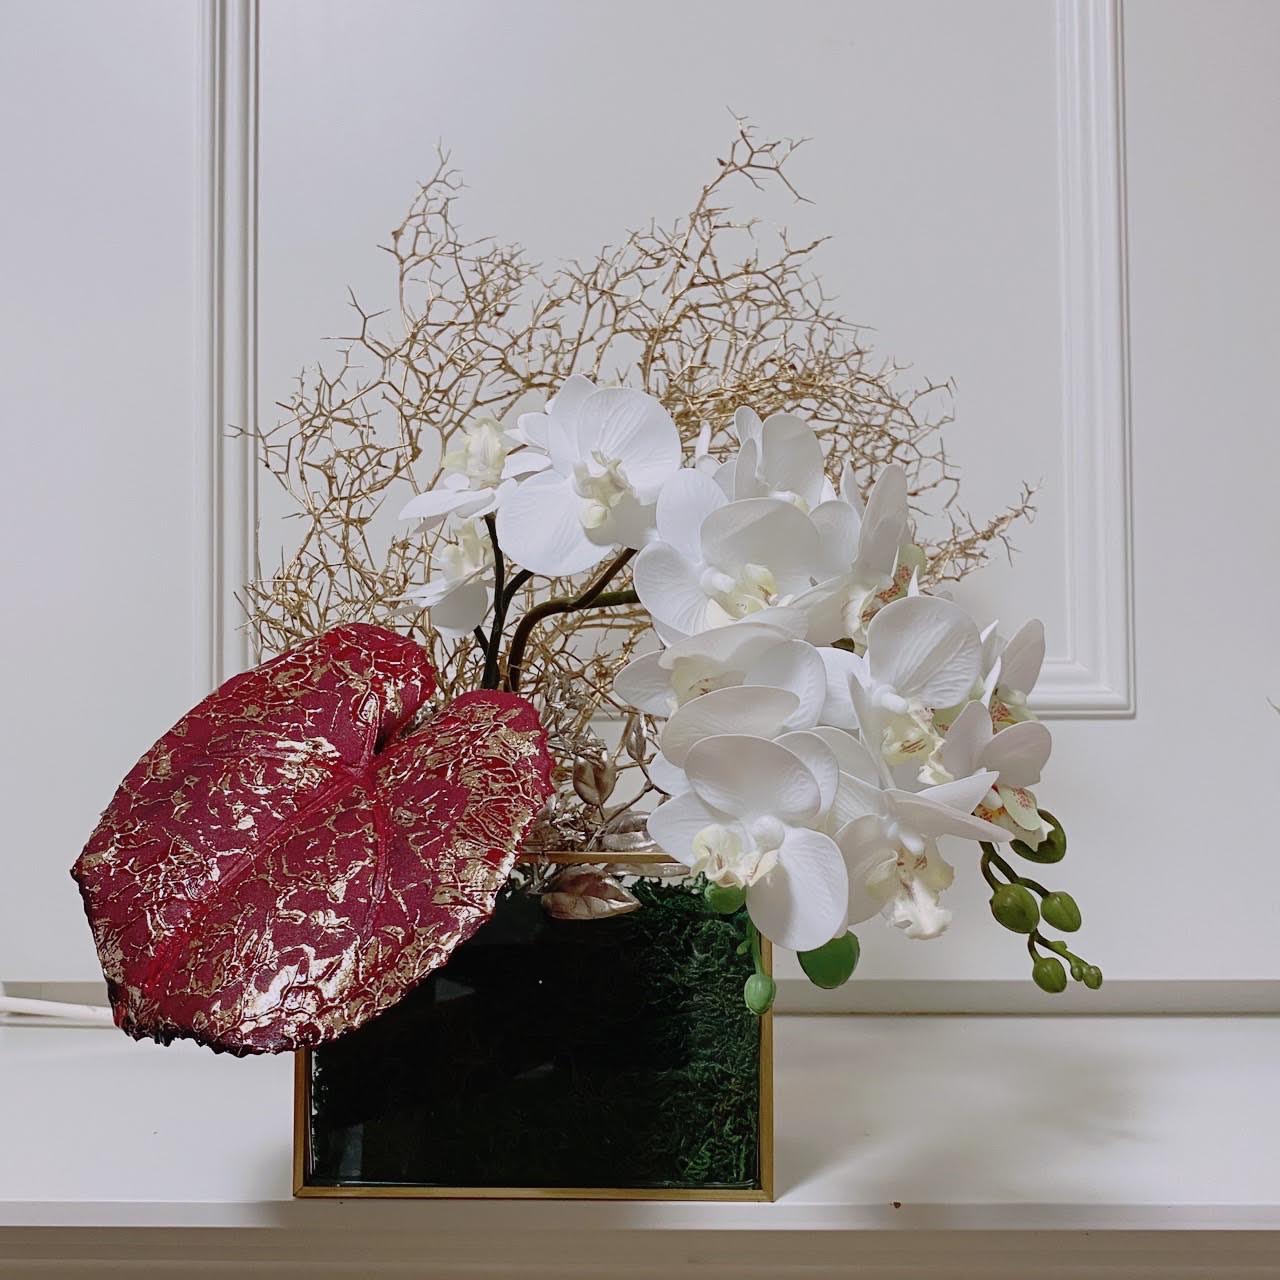 和紙 アートパネル 48x33cm 花 春 ピンク 「しだれ桜の花」 絵画 絵画 油絵 風景画 絵画 風景画